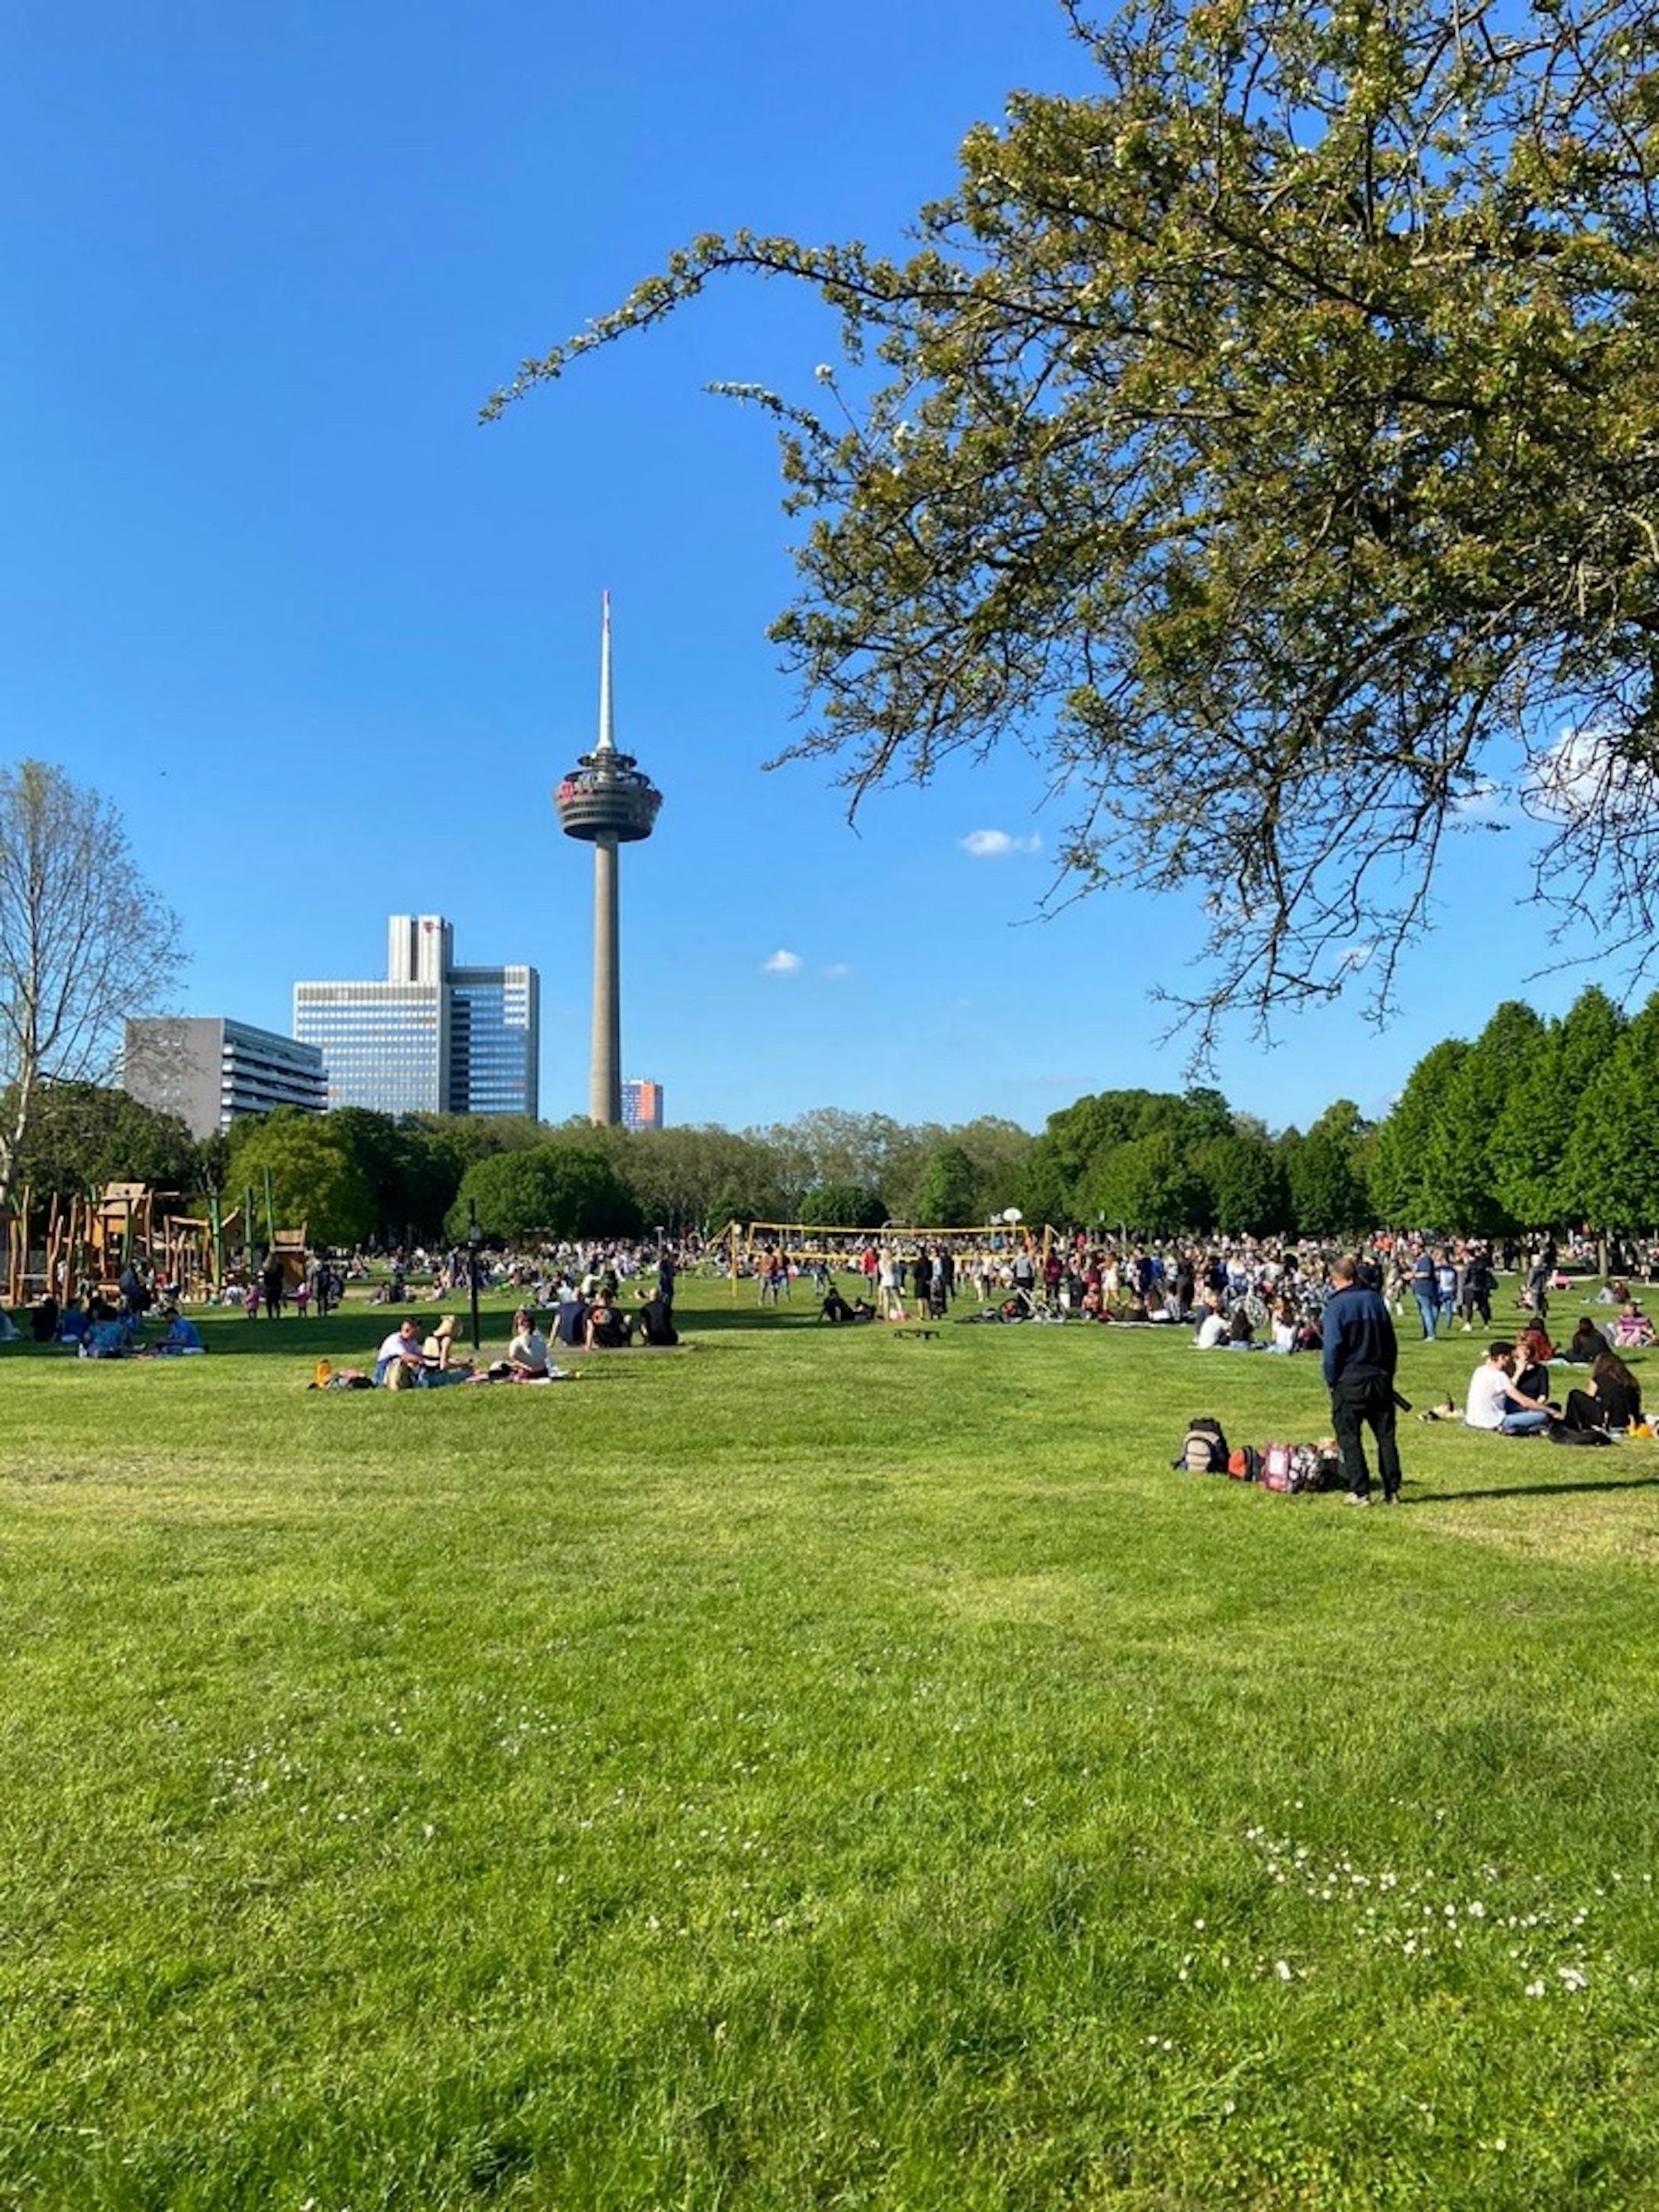 Menschen sitzen und stehen auf einer großen Rasenfläche, die von Bäumen umgeben ist. Im Hintergrund sieht man einen Fernsehturm und drei Hochhäuser.